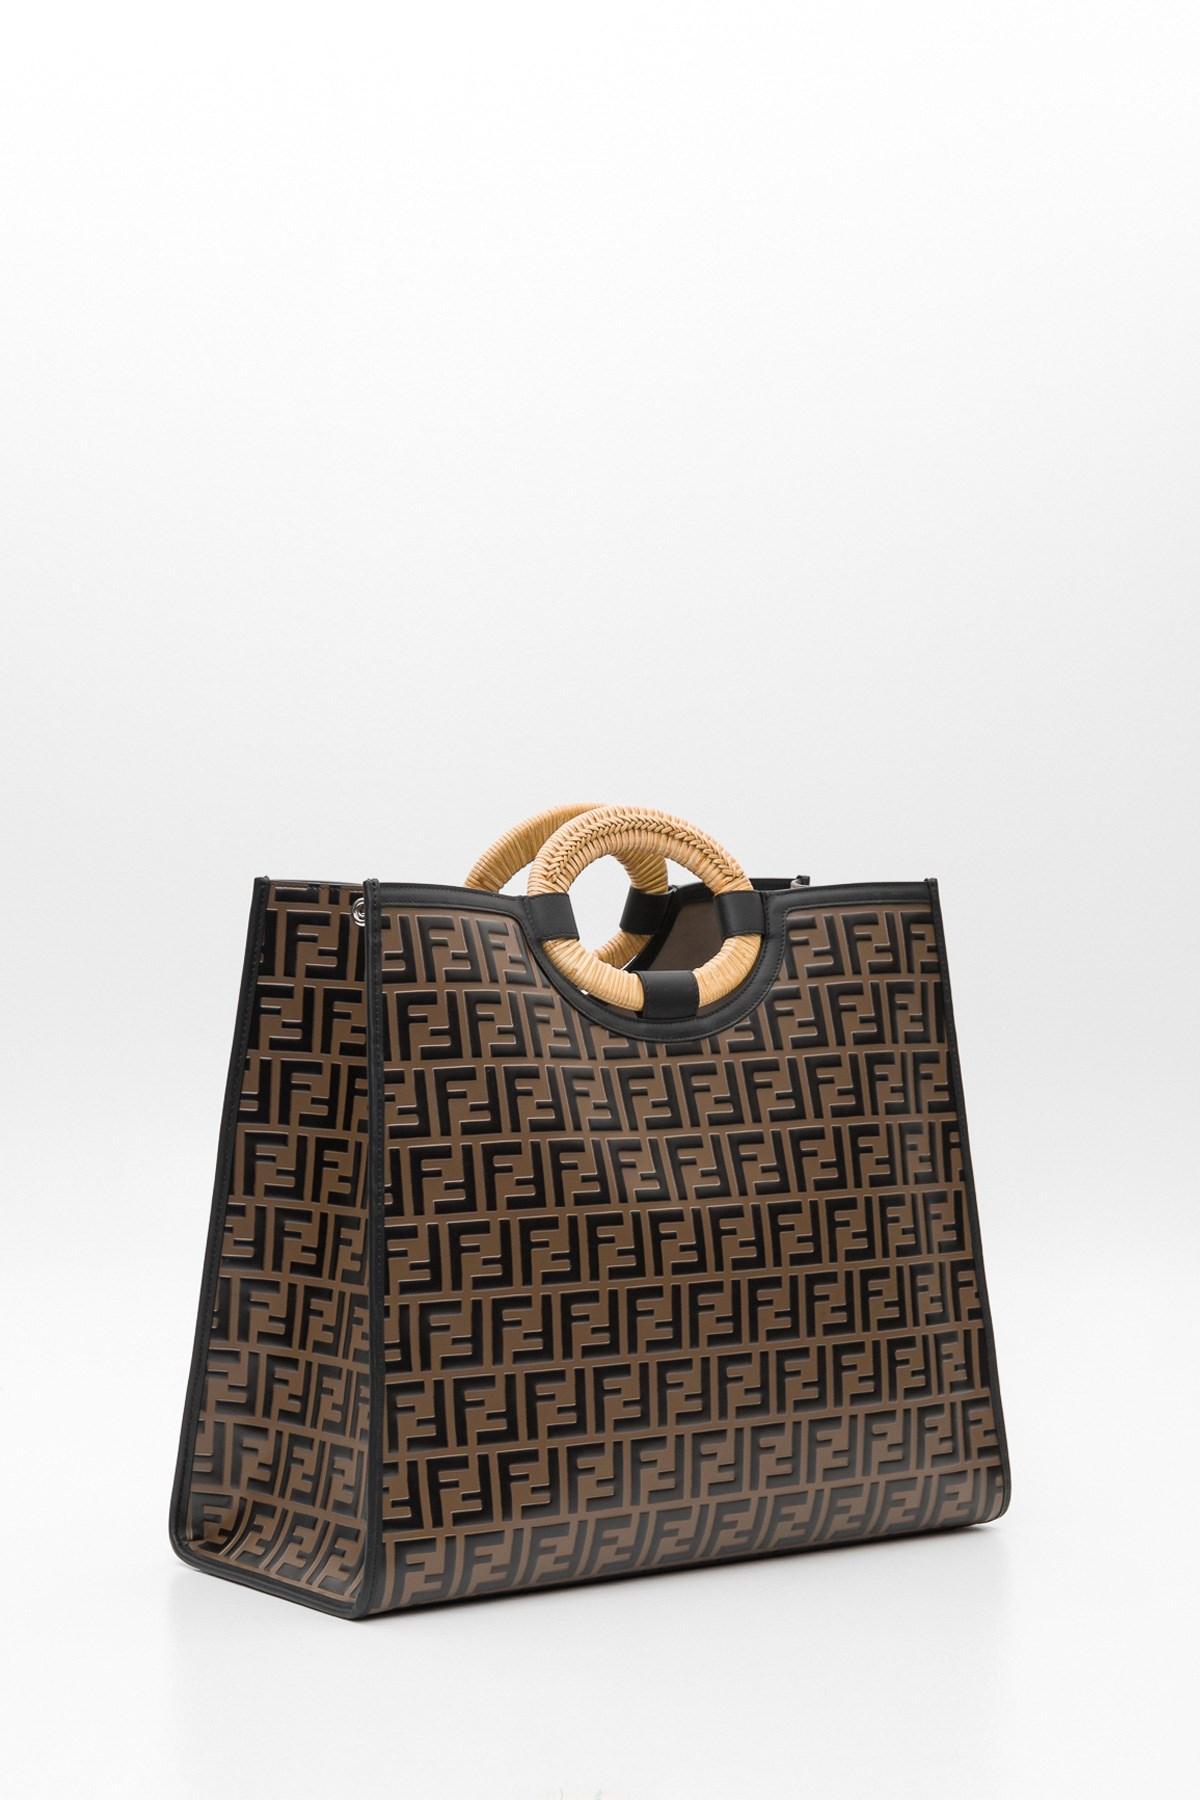 Buy Fendi handbags women handbags fashion shopping bags 2021 new